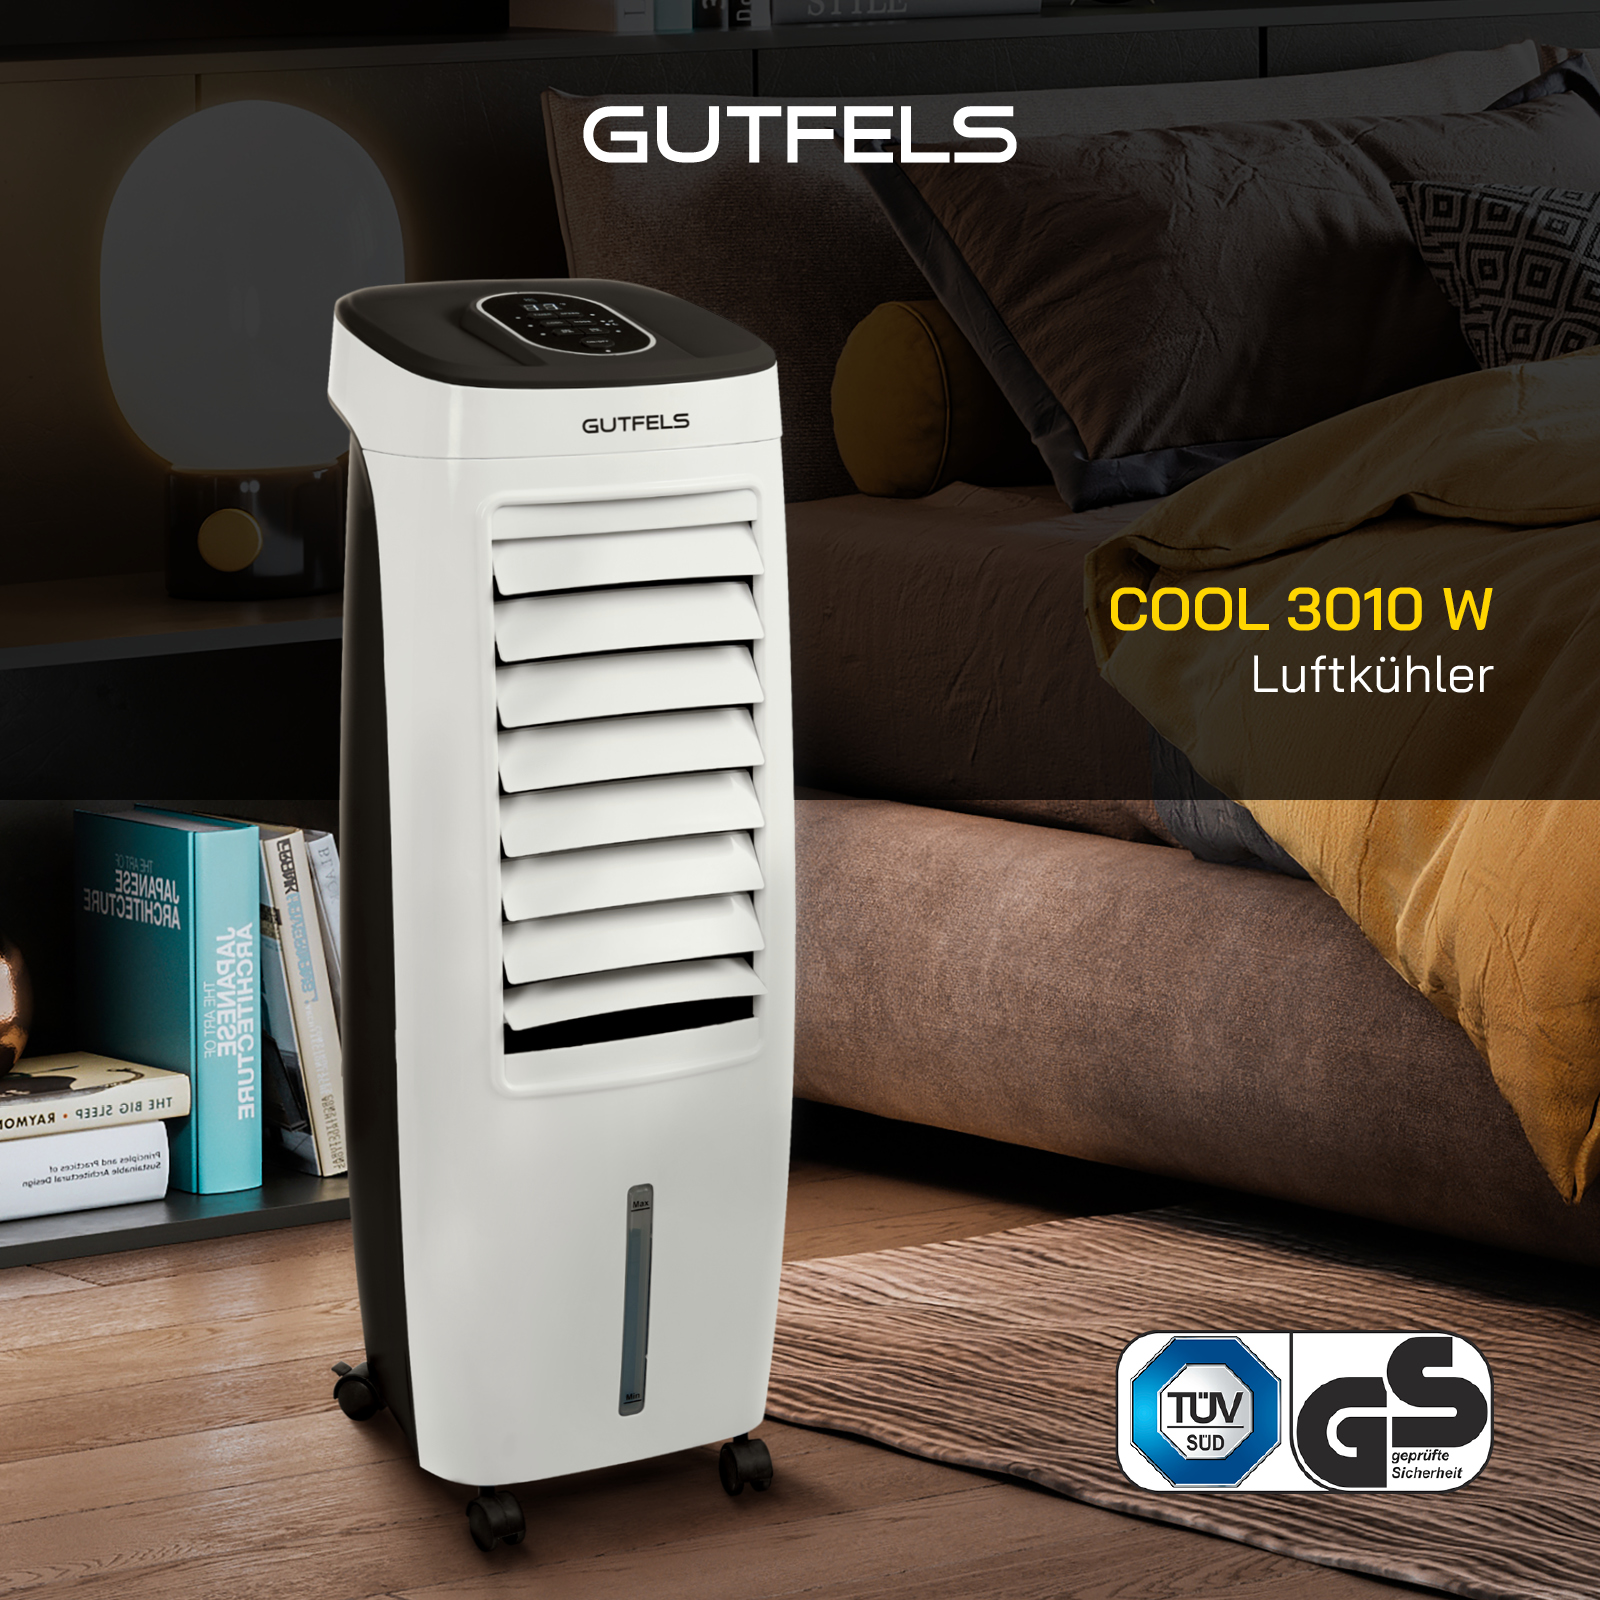 COOL 3010 GUTFELS Luftkühler W